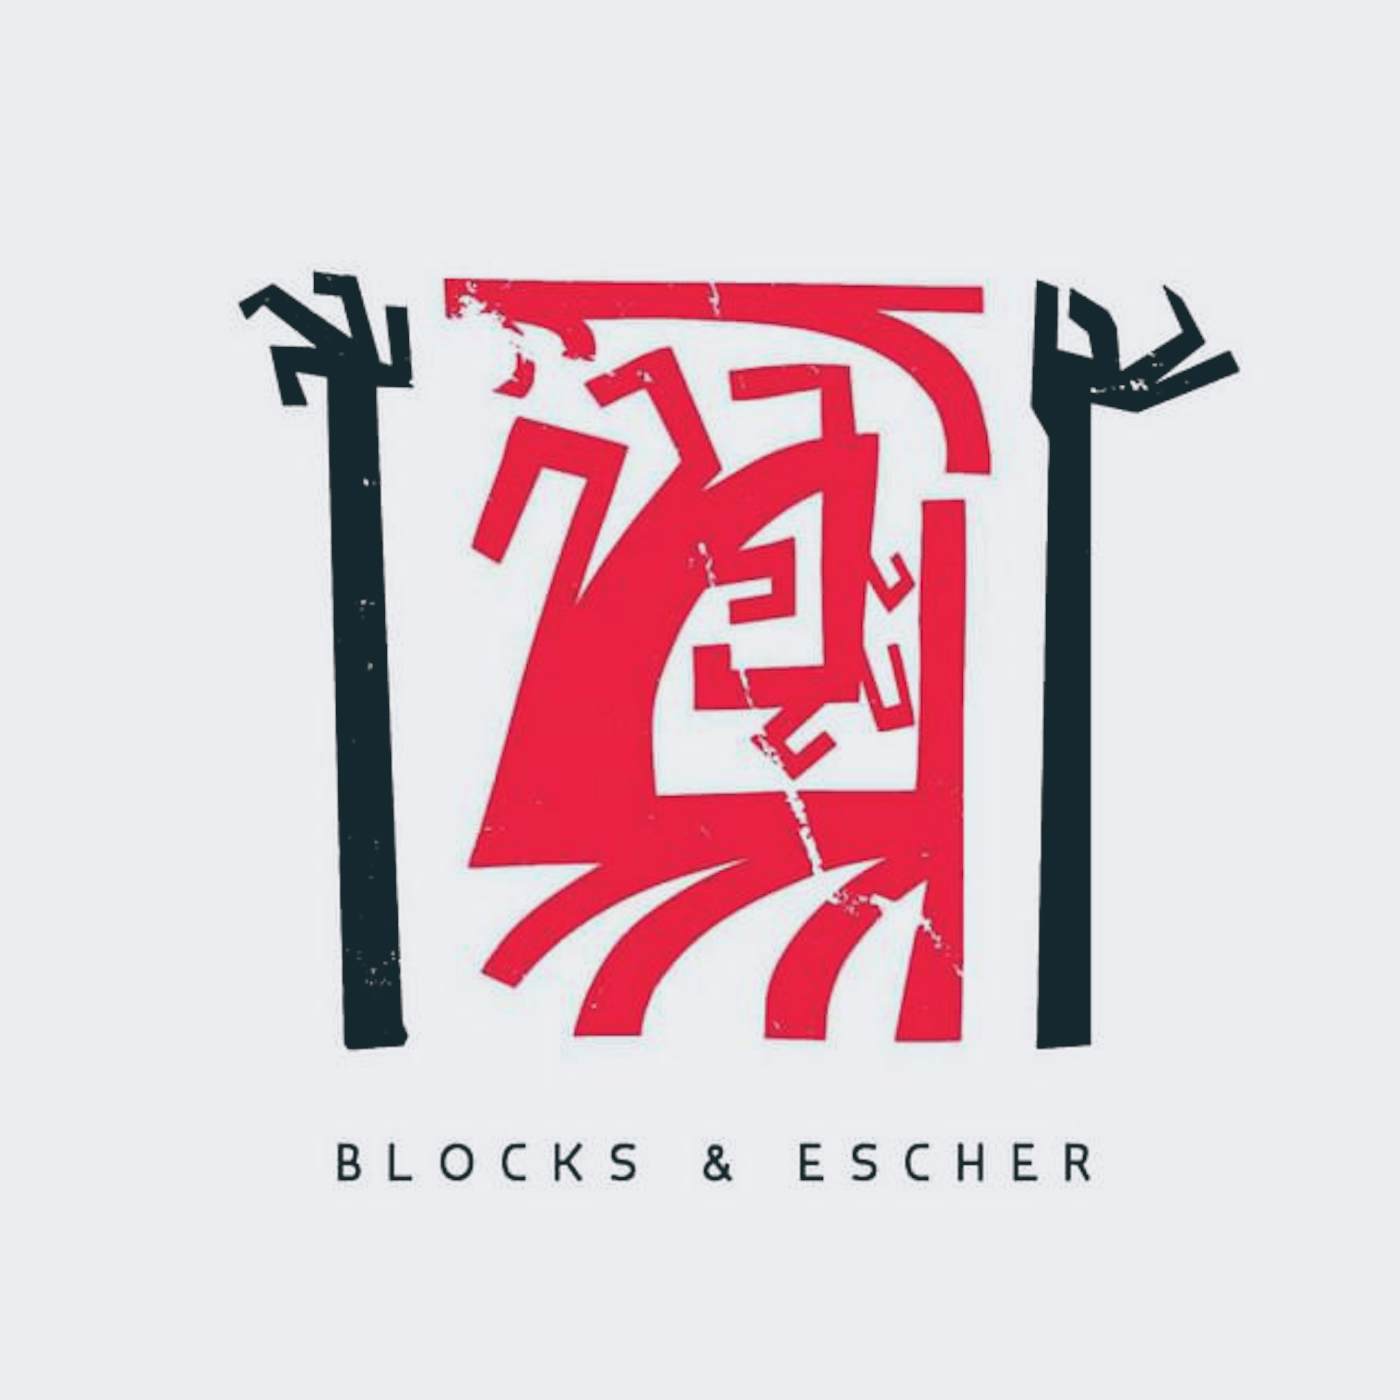 Blocks & Escher